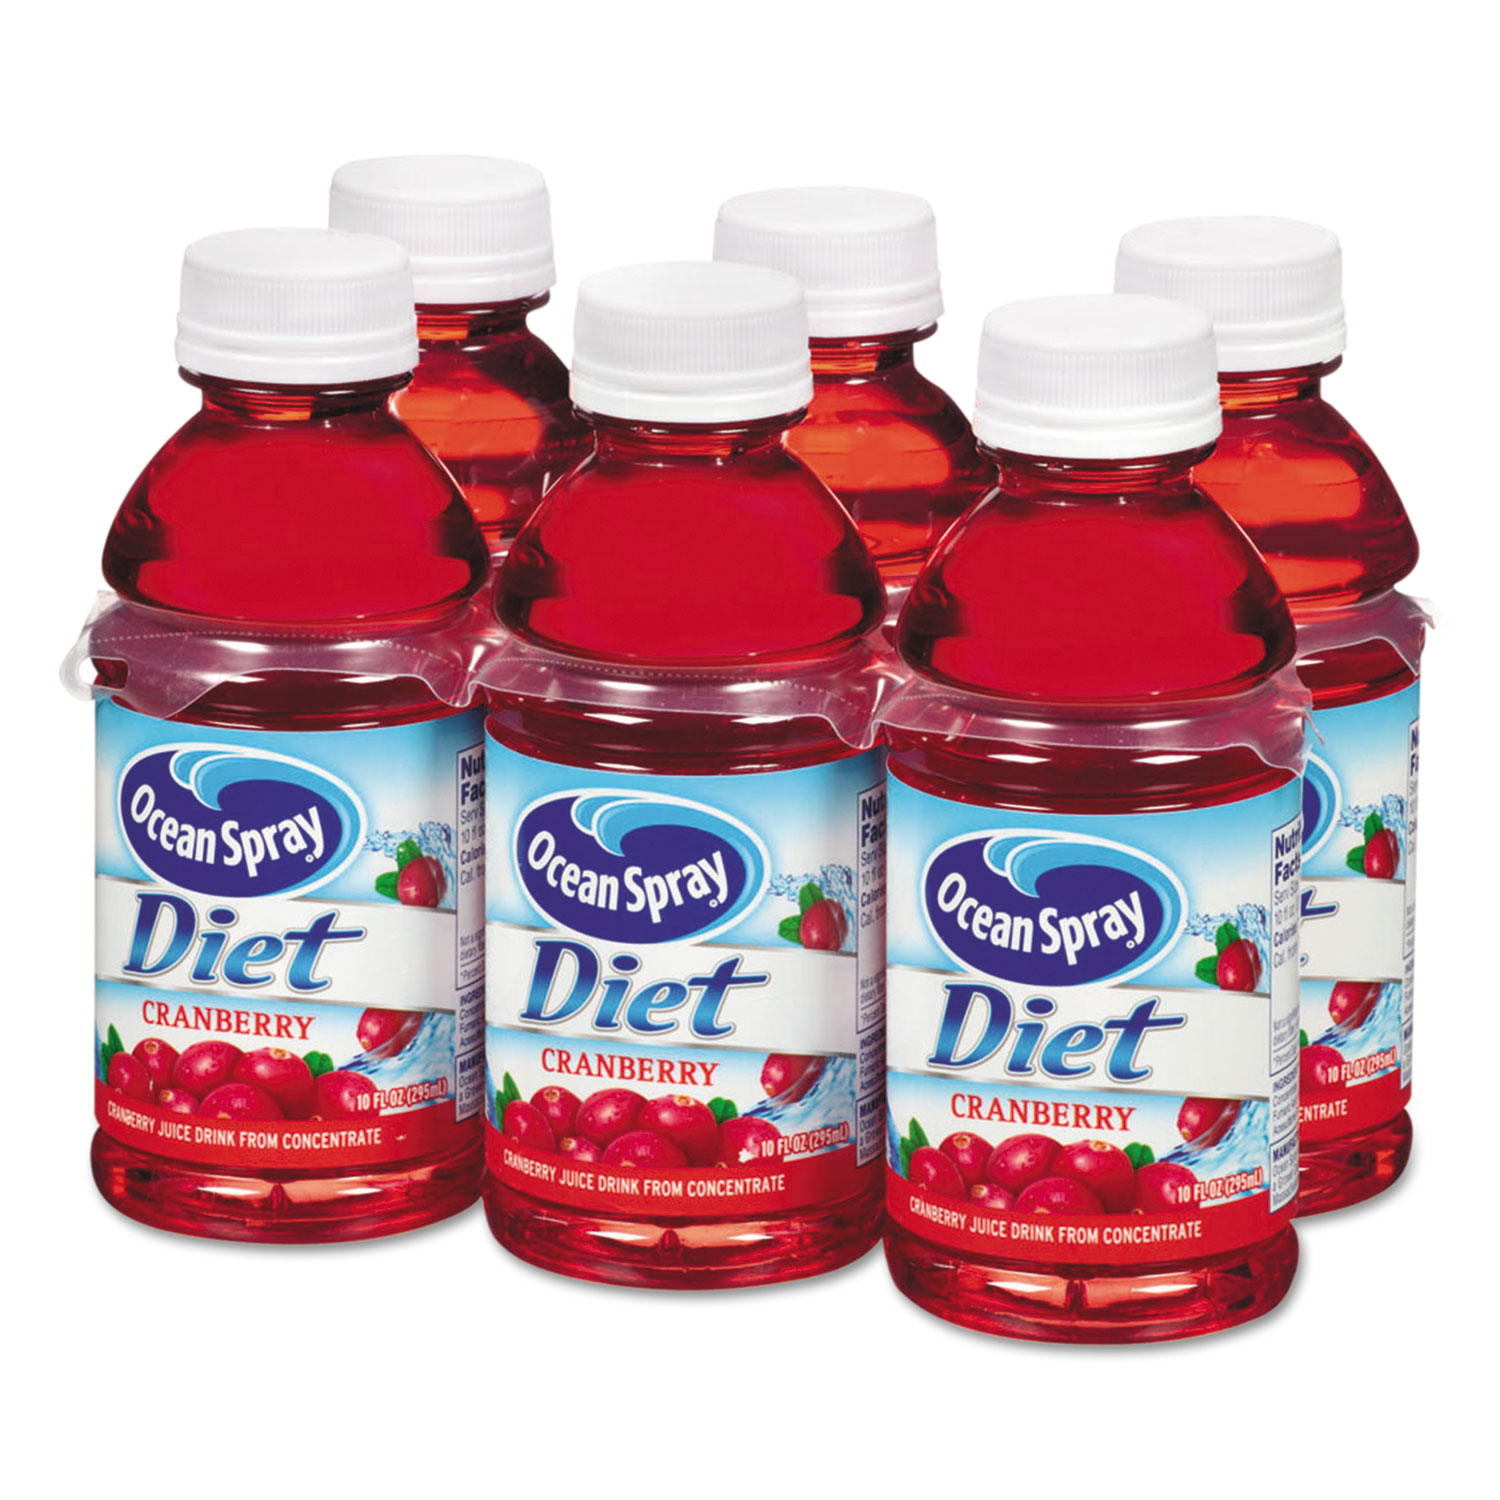 Cranberry Juice Drink, Diet Cranberry, 10 oz Bottle, 6/Pack